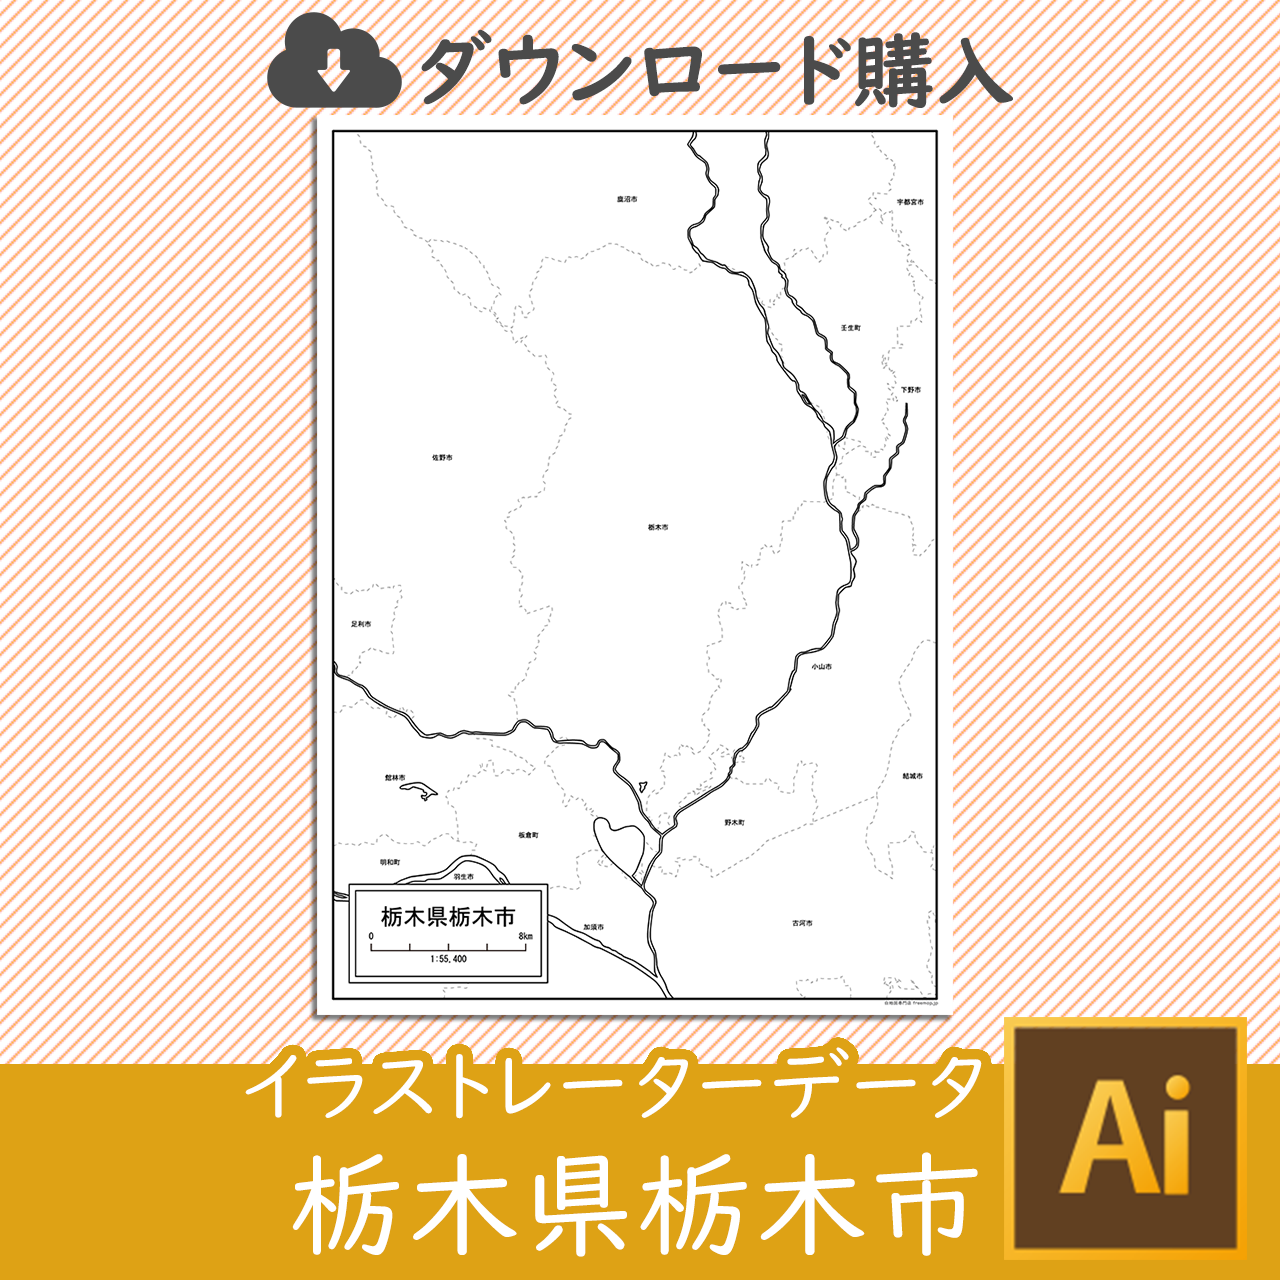 栃木市のサムネイル画像